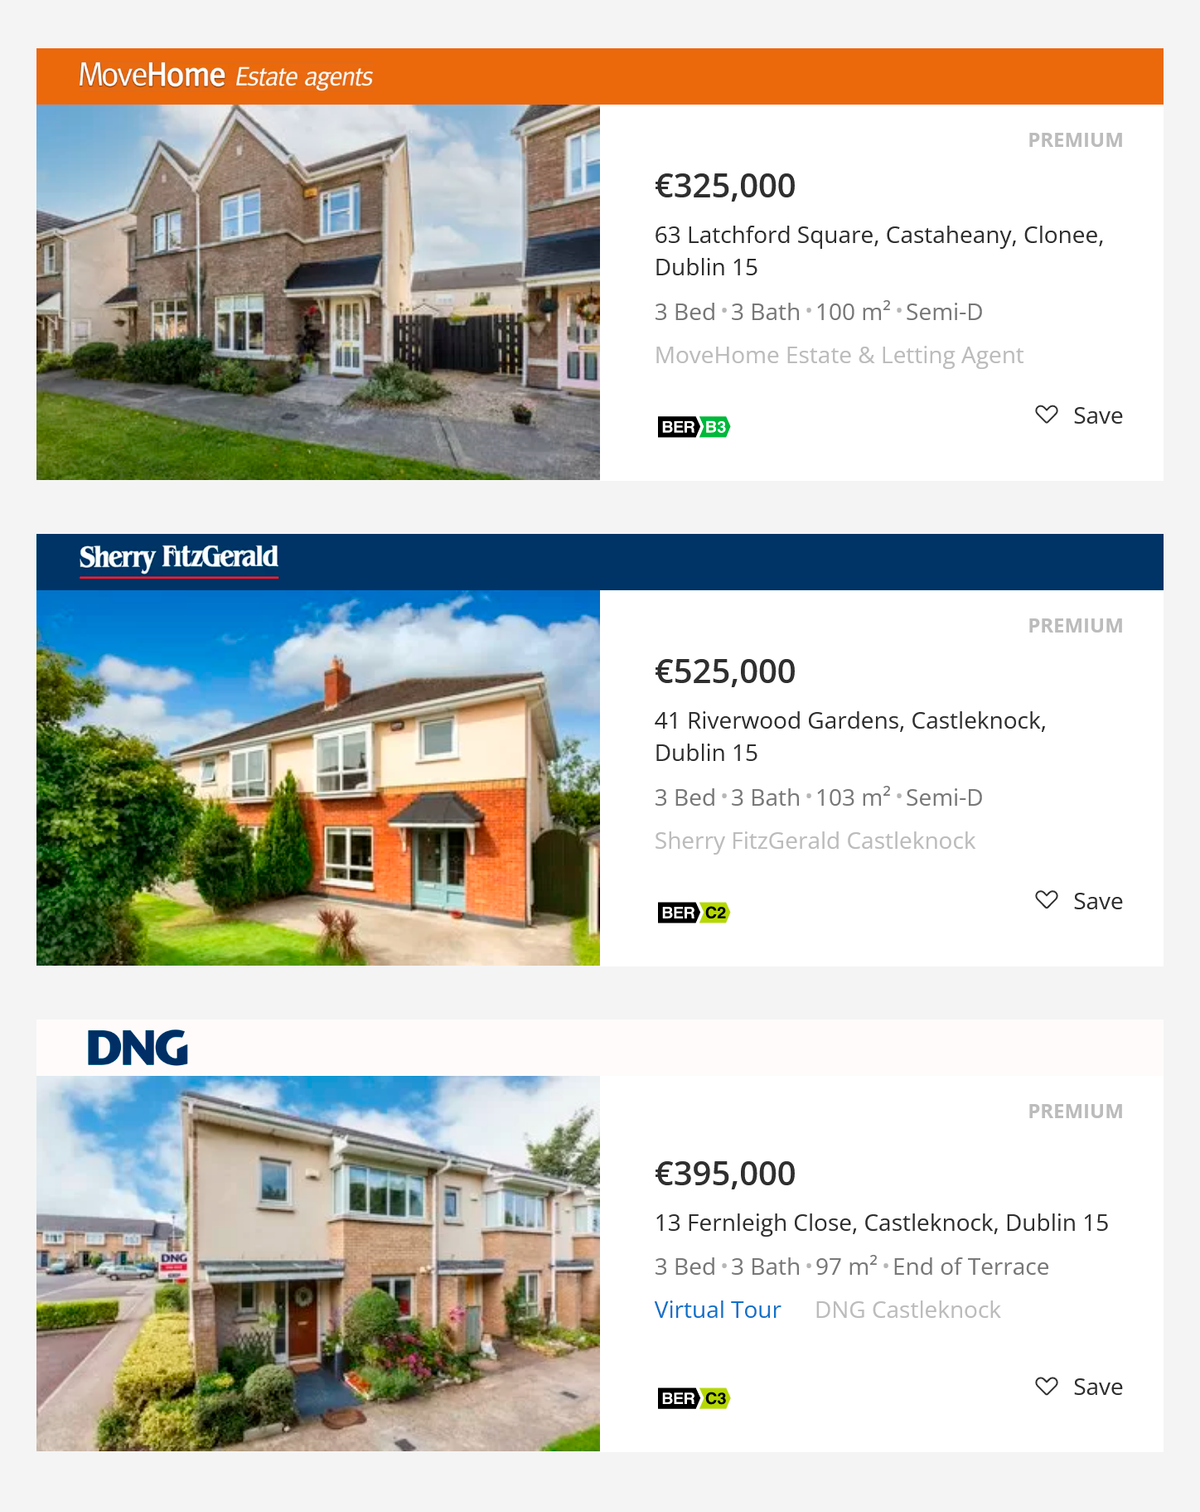 Примерная стоимость домов в нашем районе. Источник: daft.ie